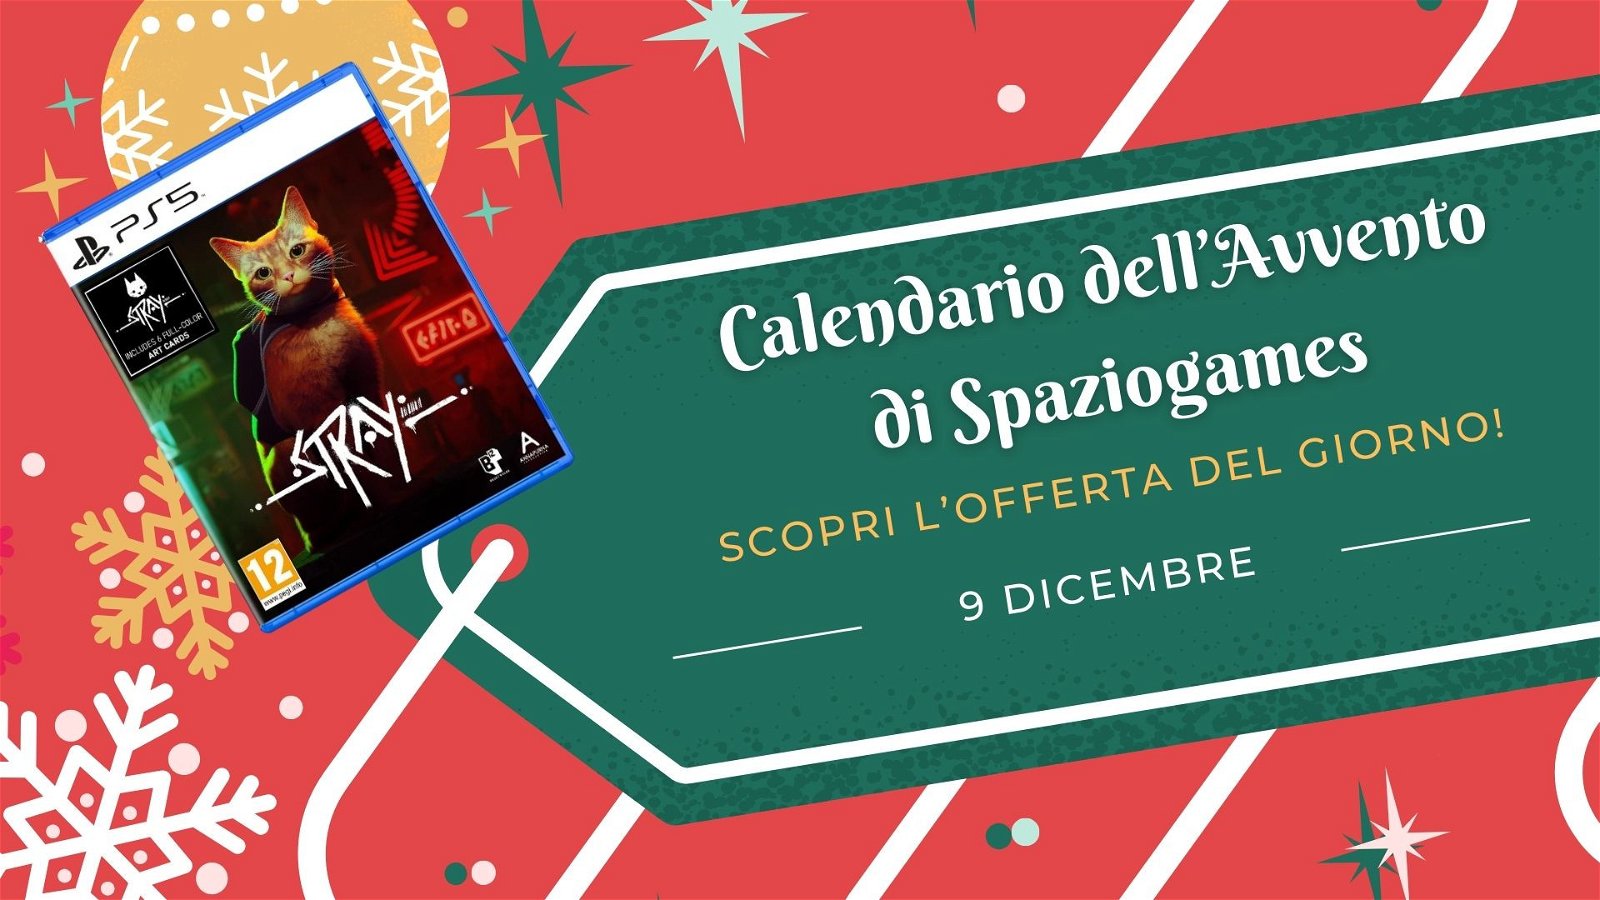 Calendario dell'avvento di Spaziogames: scopri l'offerta del 9 dicembre